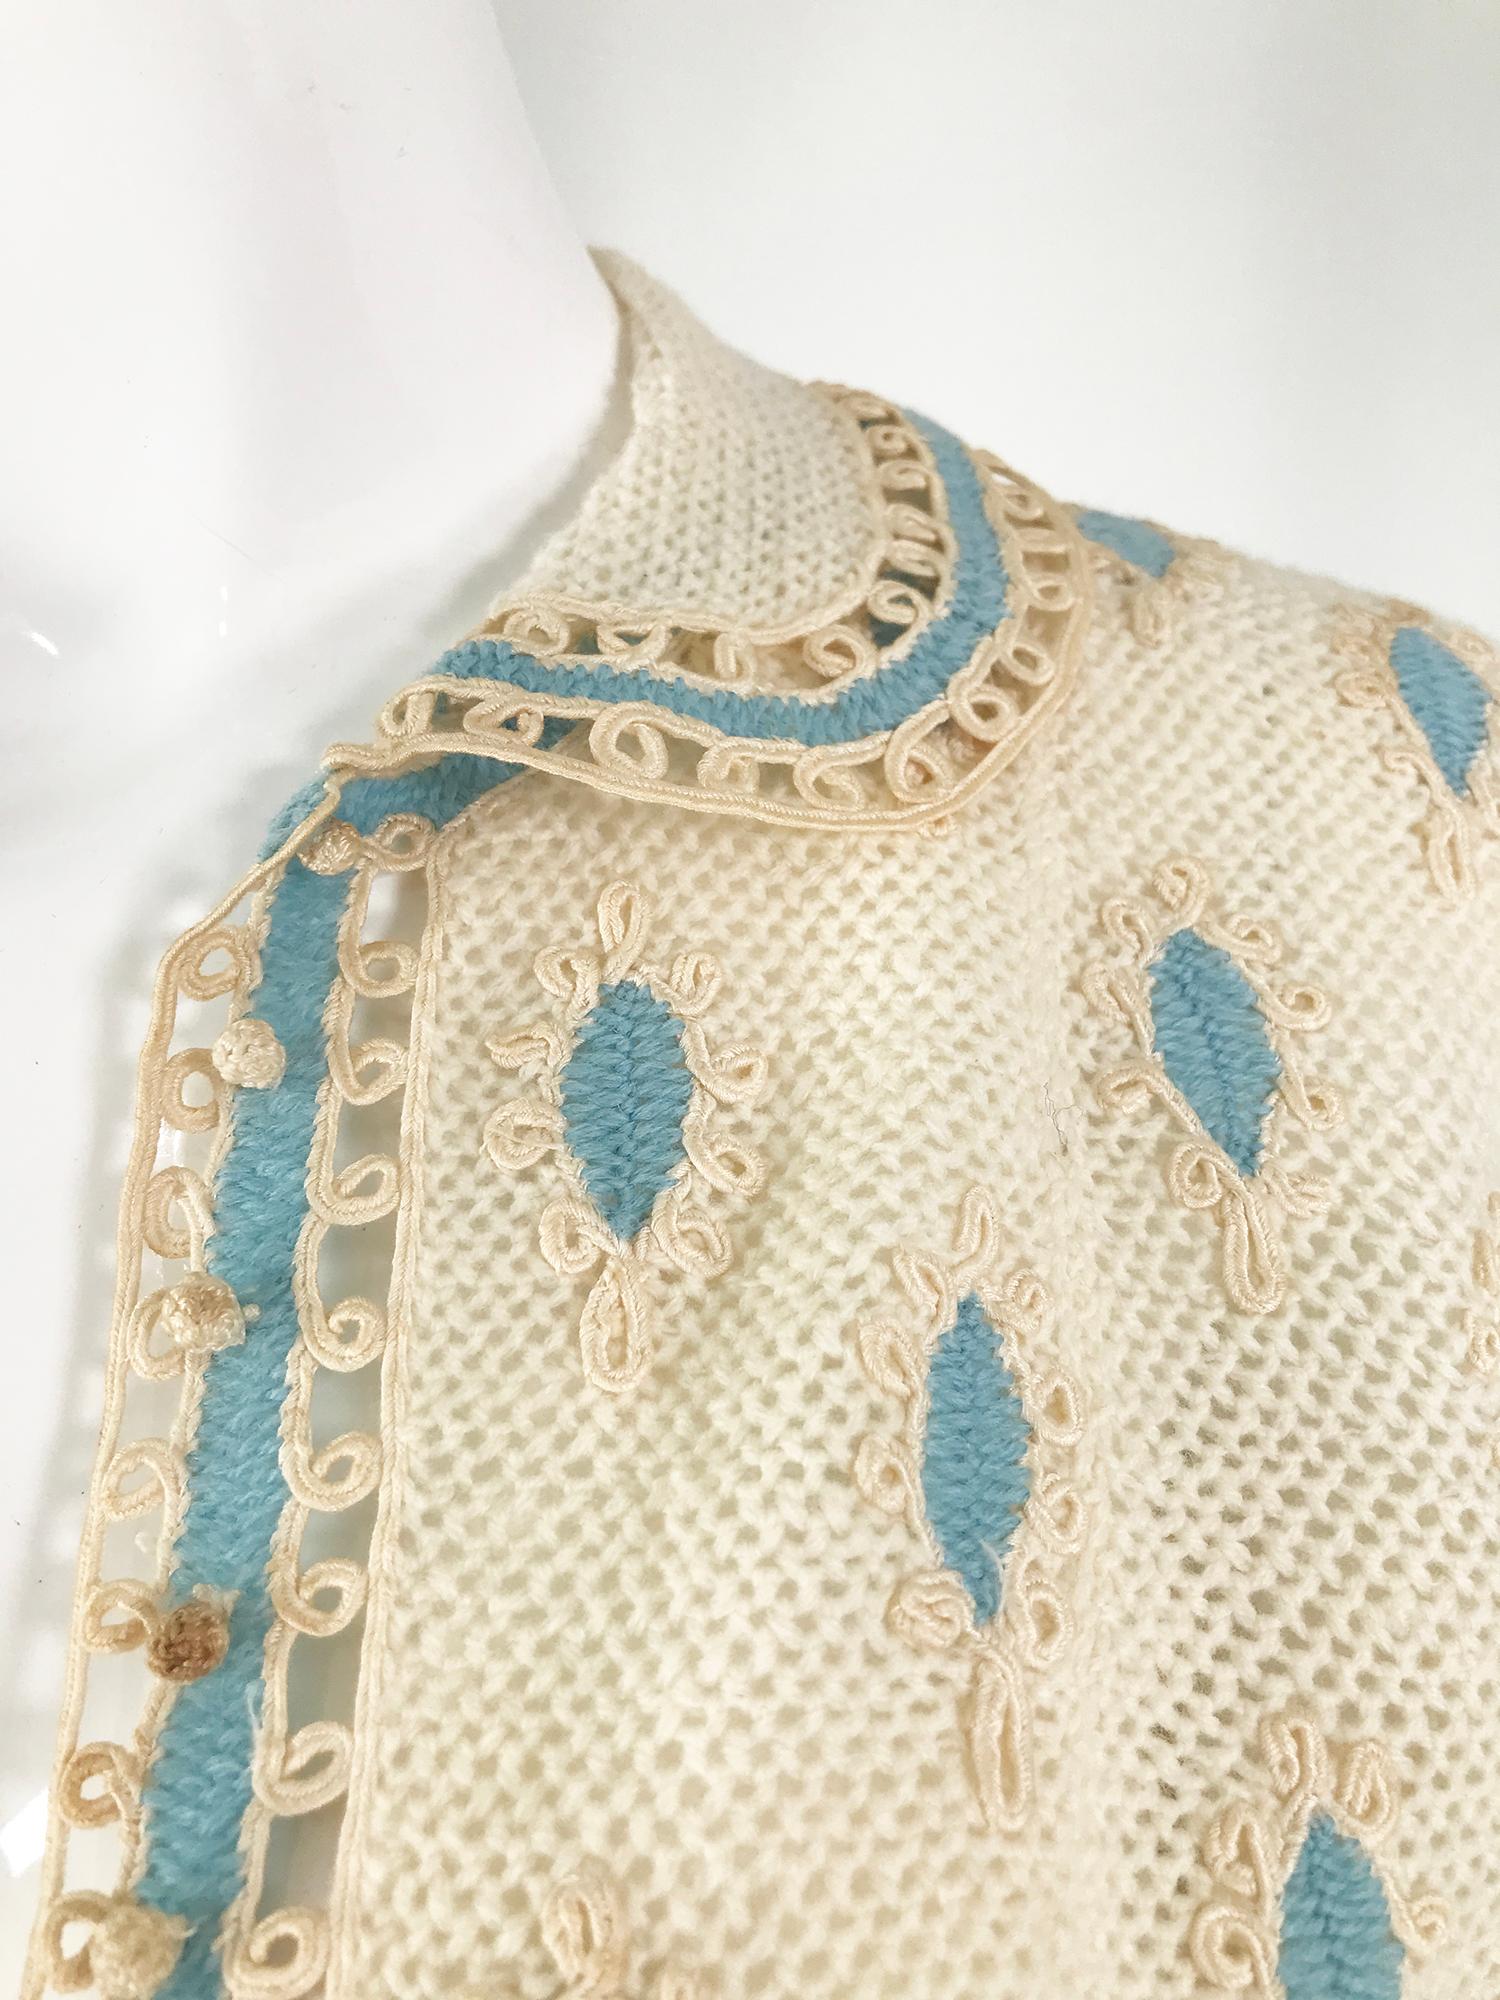 Beige Cream Crochet & Cord Work Applique Cardigan Sweater 1960s Handmade